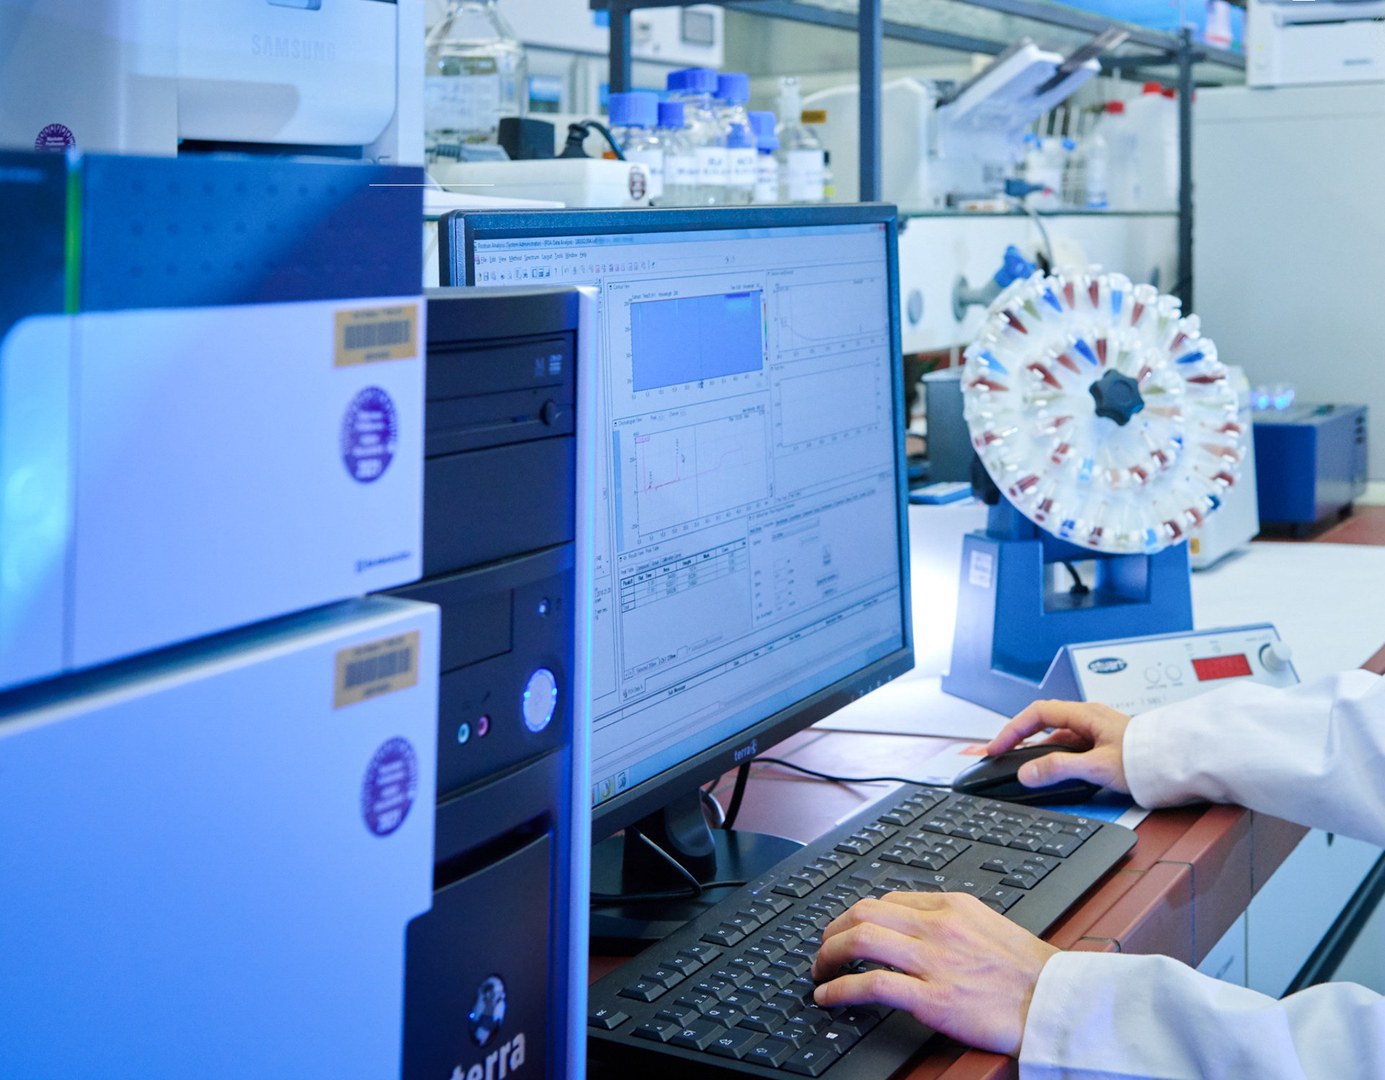 Drei GO-Bio initial Projekte starten in Bonn - Mit GO-Bio initial fördert das Bundesministerium für Bildung und Forschung (BMBF) neue Forschungsansätze mit hohem Innovationspotential im Bereich der Lebenswissenschaften. Ziel ist, diese erfolgreich in marktfähige Produkte und Dienstleistungen weiterzuentwickeln.